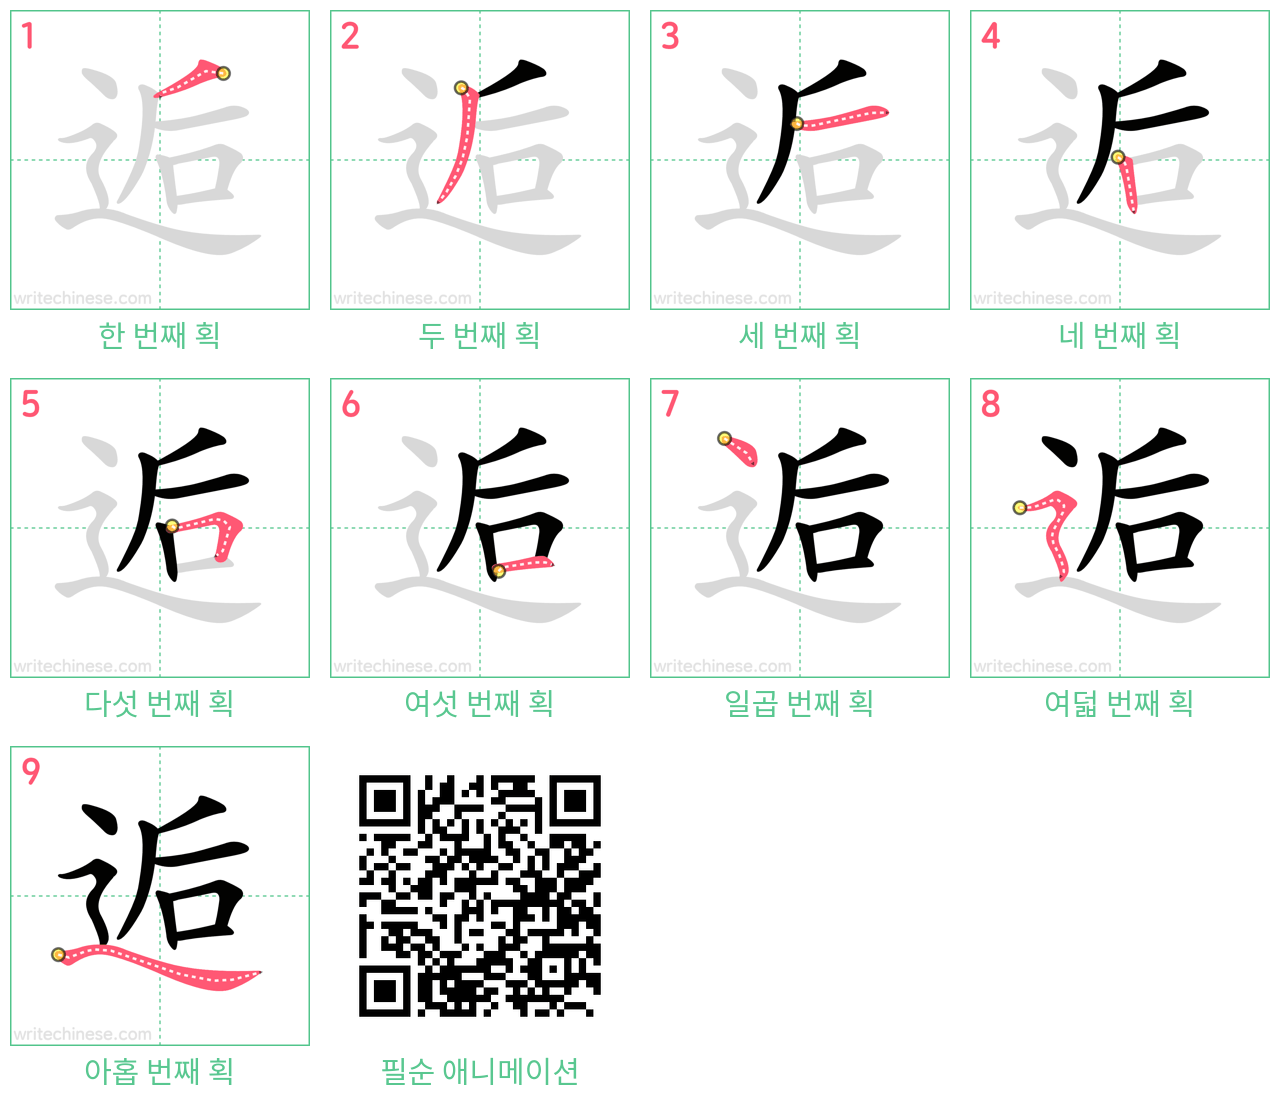 逅 step-by-step stroke order diagrams